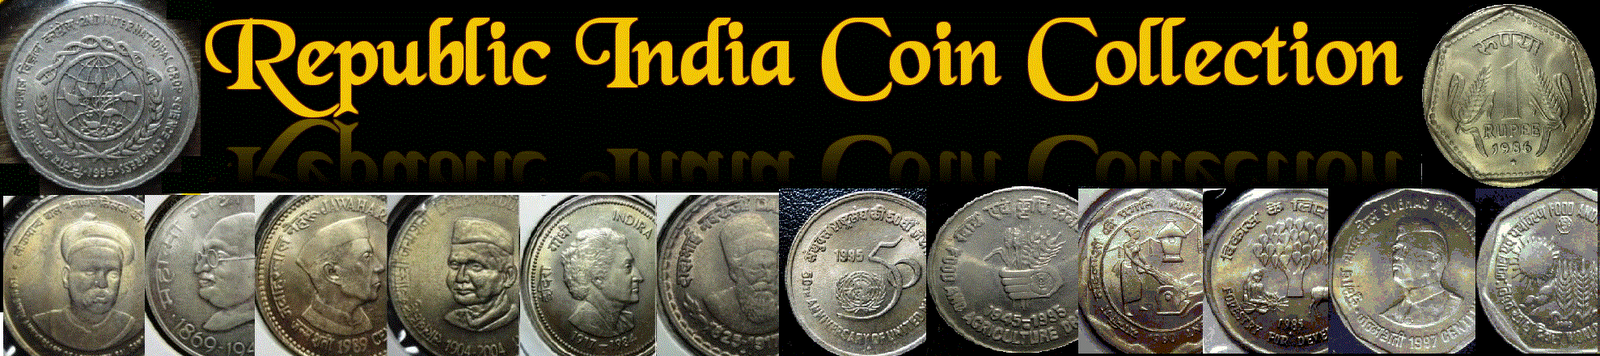 Republic India Coin Collection